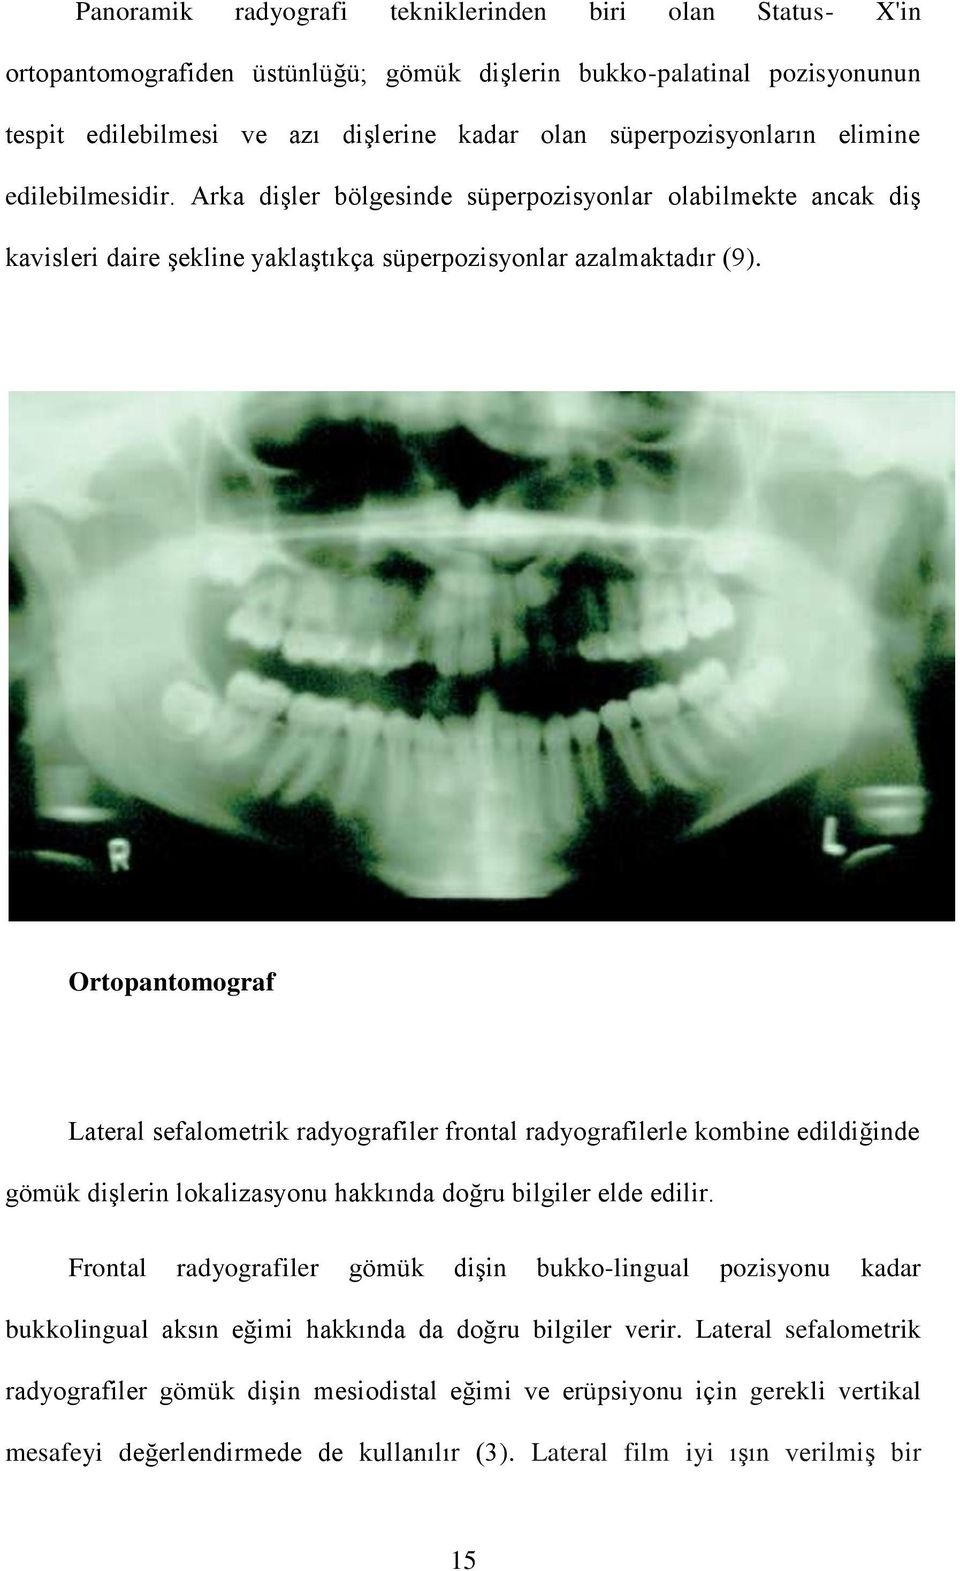 Ortopantomograf Lateral sefalometrik radyografiler frontal radyografilerle kombine edildiğinde gömük dişlerin lokalizasyonu hakkında doğru bilgiler elde edilir.